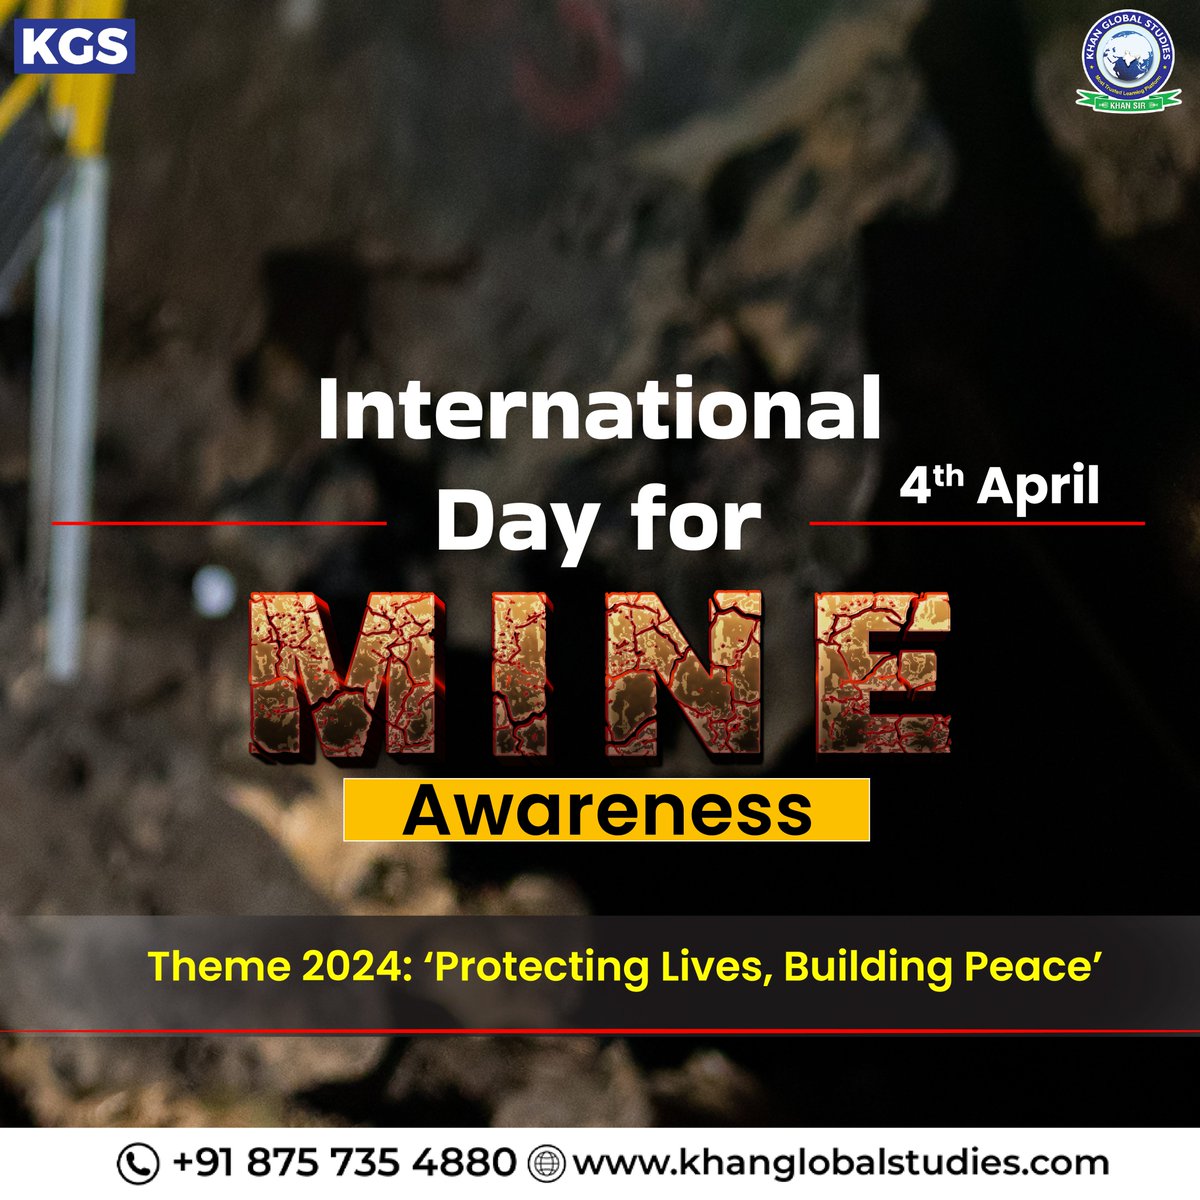 International Day of Mine Awareness के मौके पर आइए बारूदी सुरंगों के खतरे से बचने के लिए जागरूकता फैलाएं।
.
.
.
#internationalmineawarenessday #mine #safety #awareness #safepaths #mineawarenessday #currentaffairs #didyouknow #gk #kgsias #khanglobalstudies #Khansir #learnmore